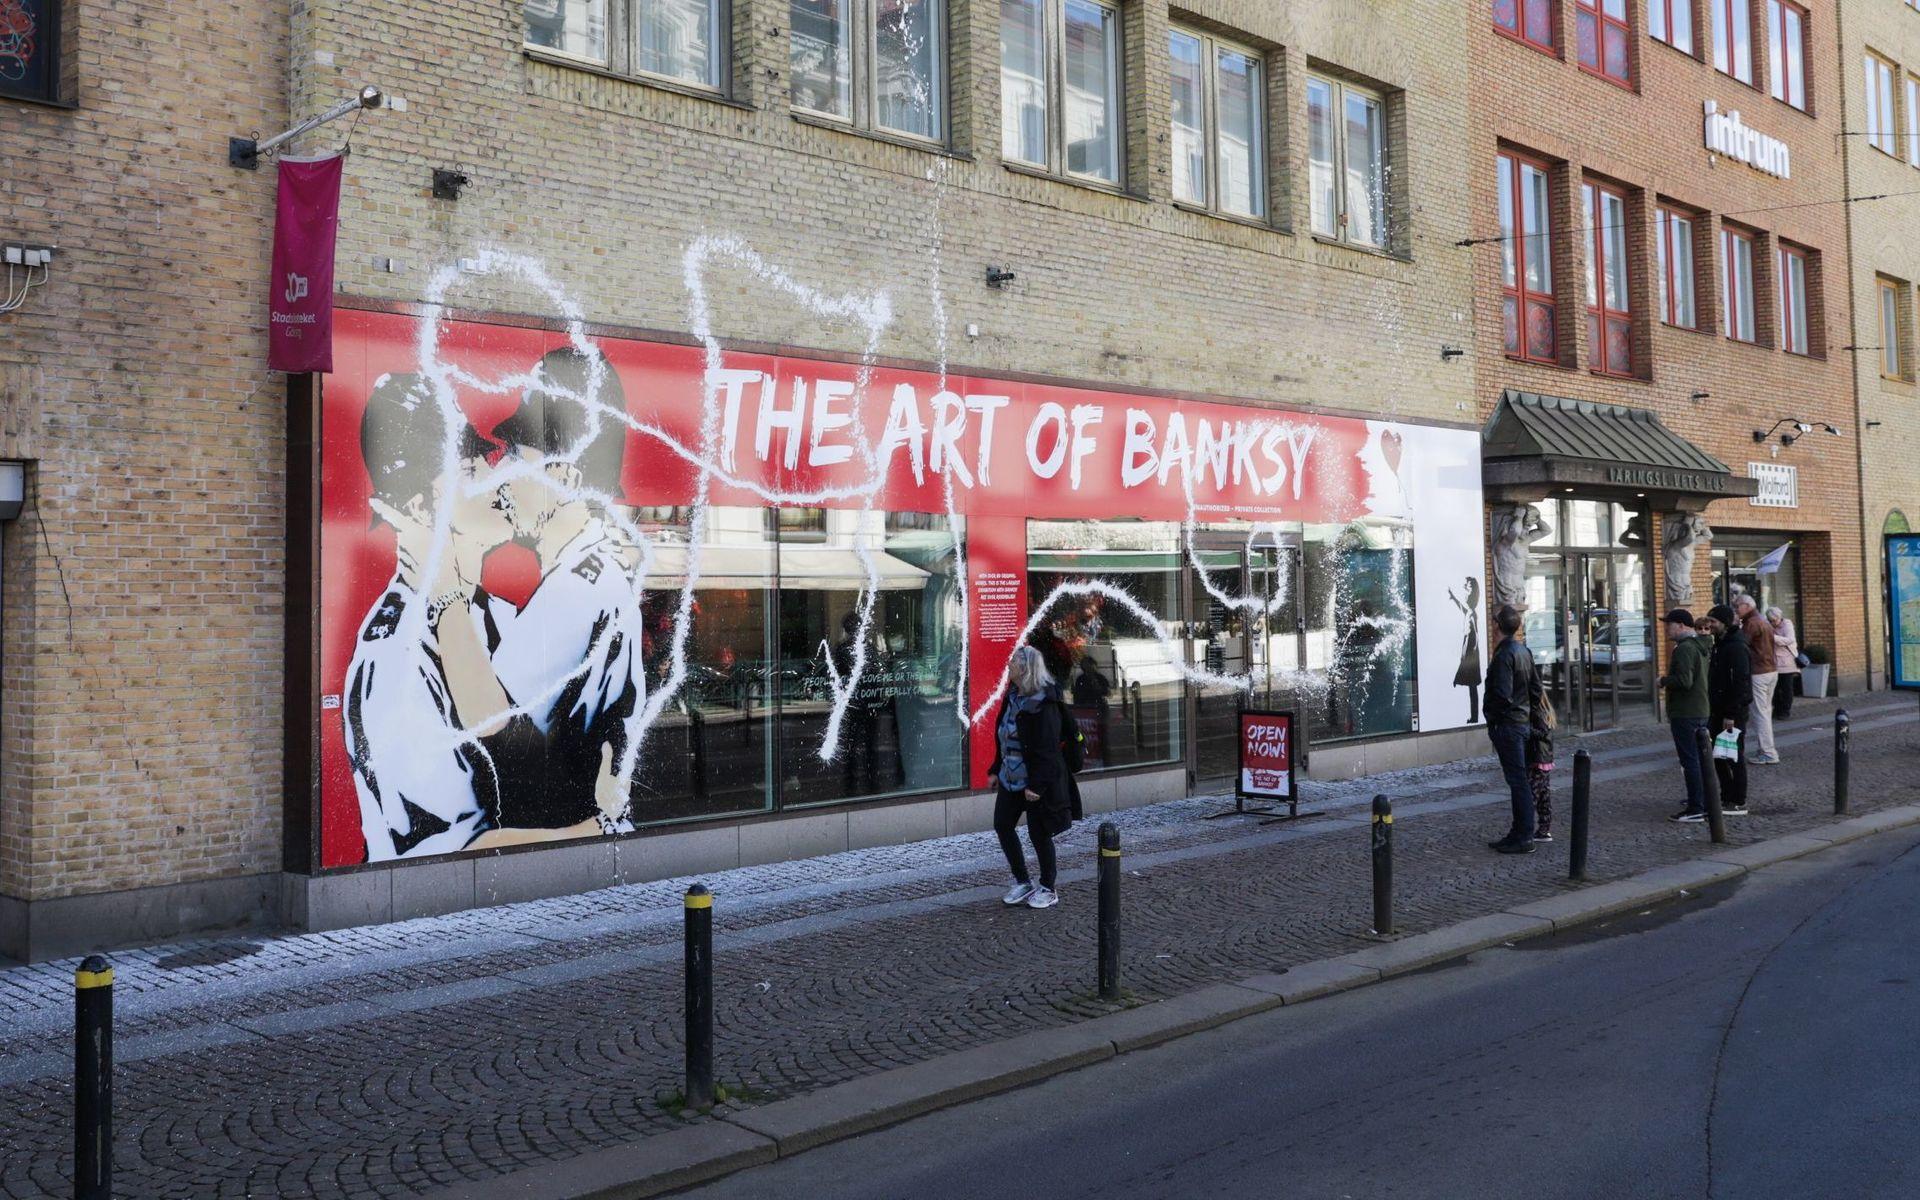 Den stora Banksy-utställningen fick sin fasad nedklottrad med vit färg natten till första ustsällningsdagen.